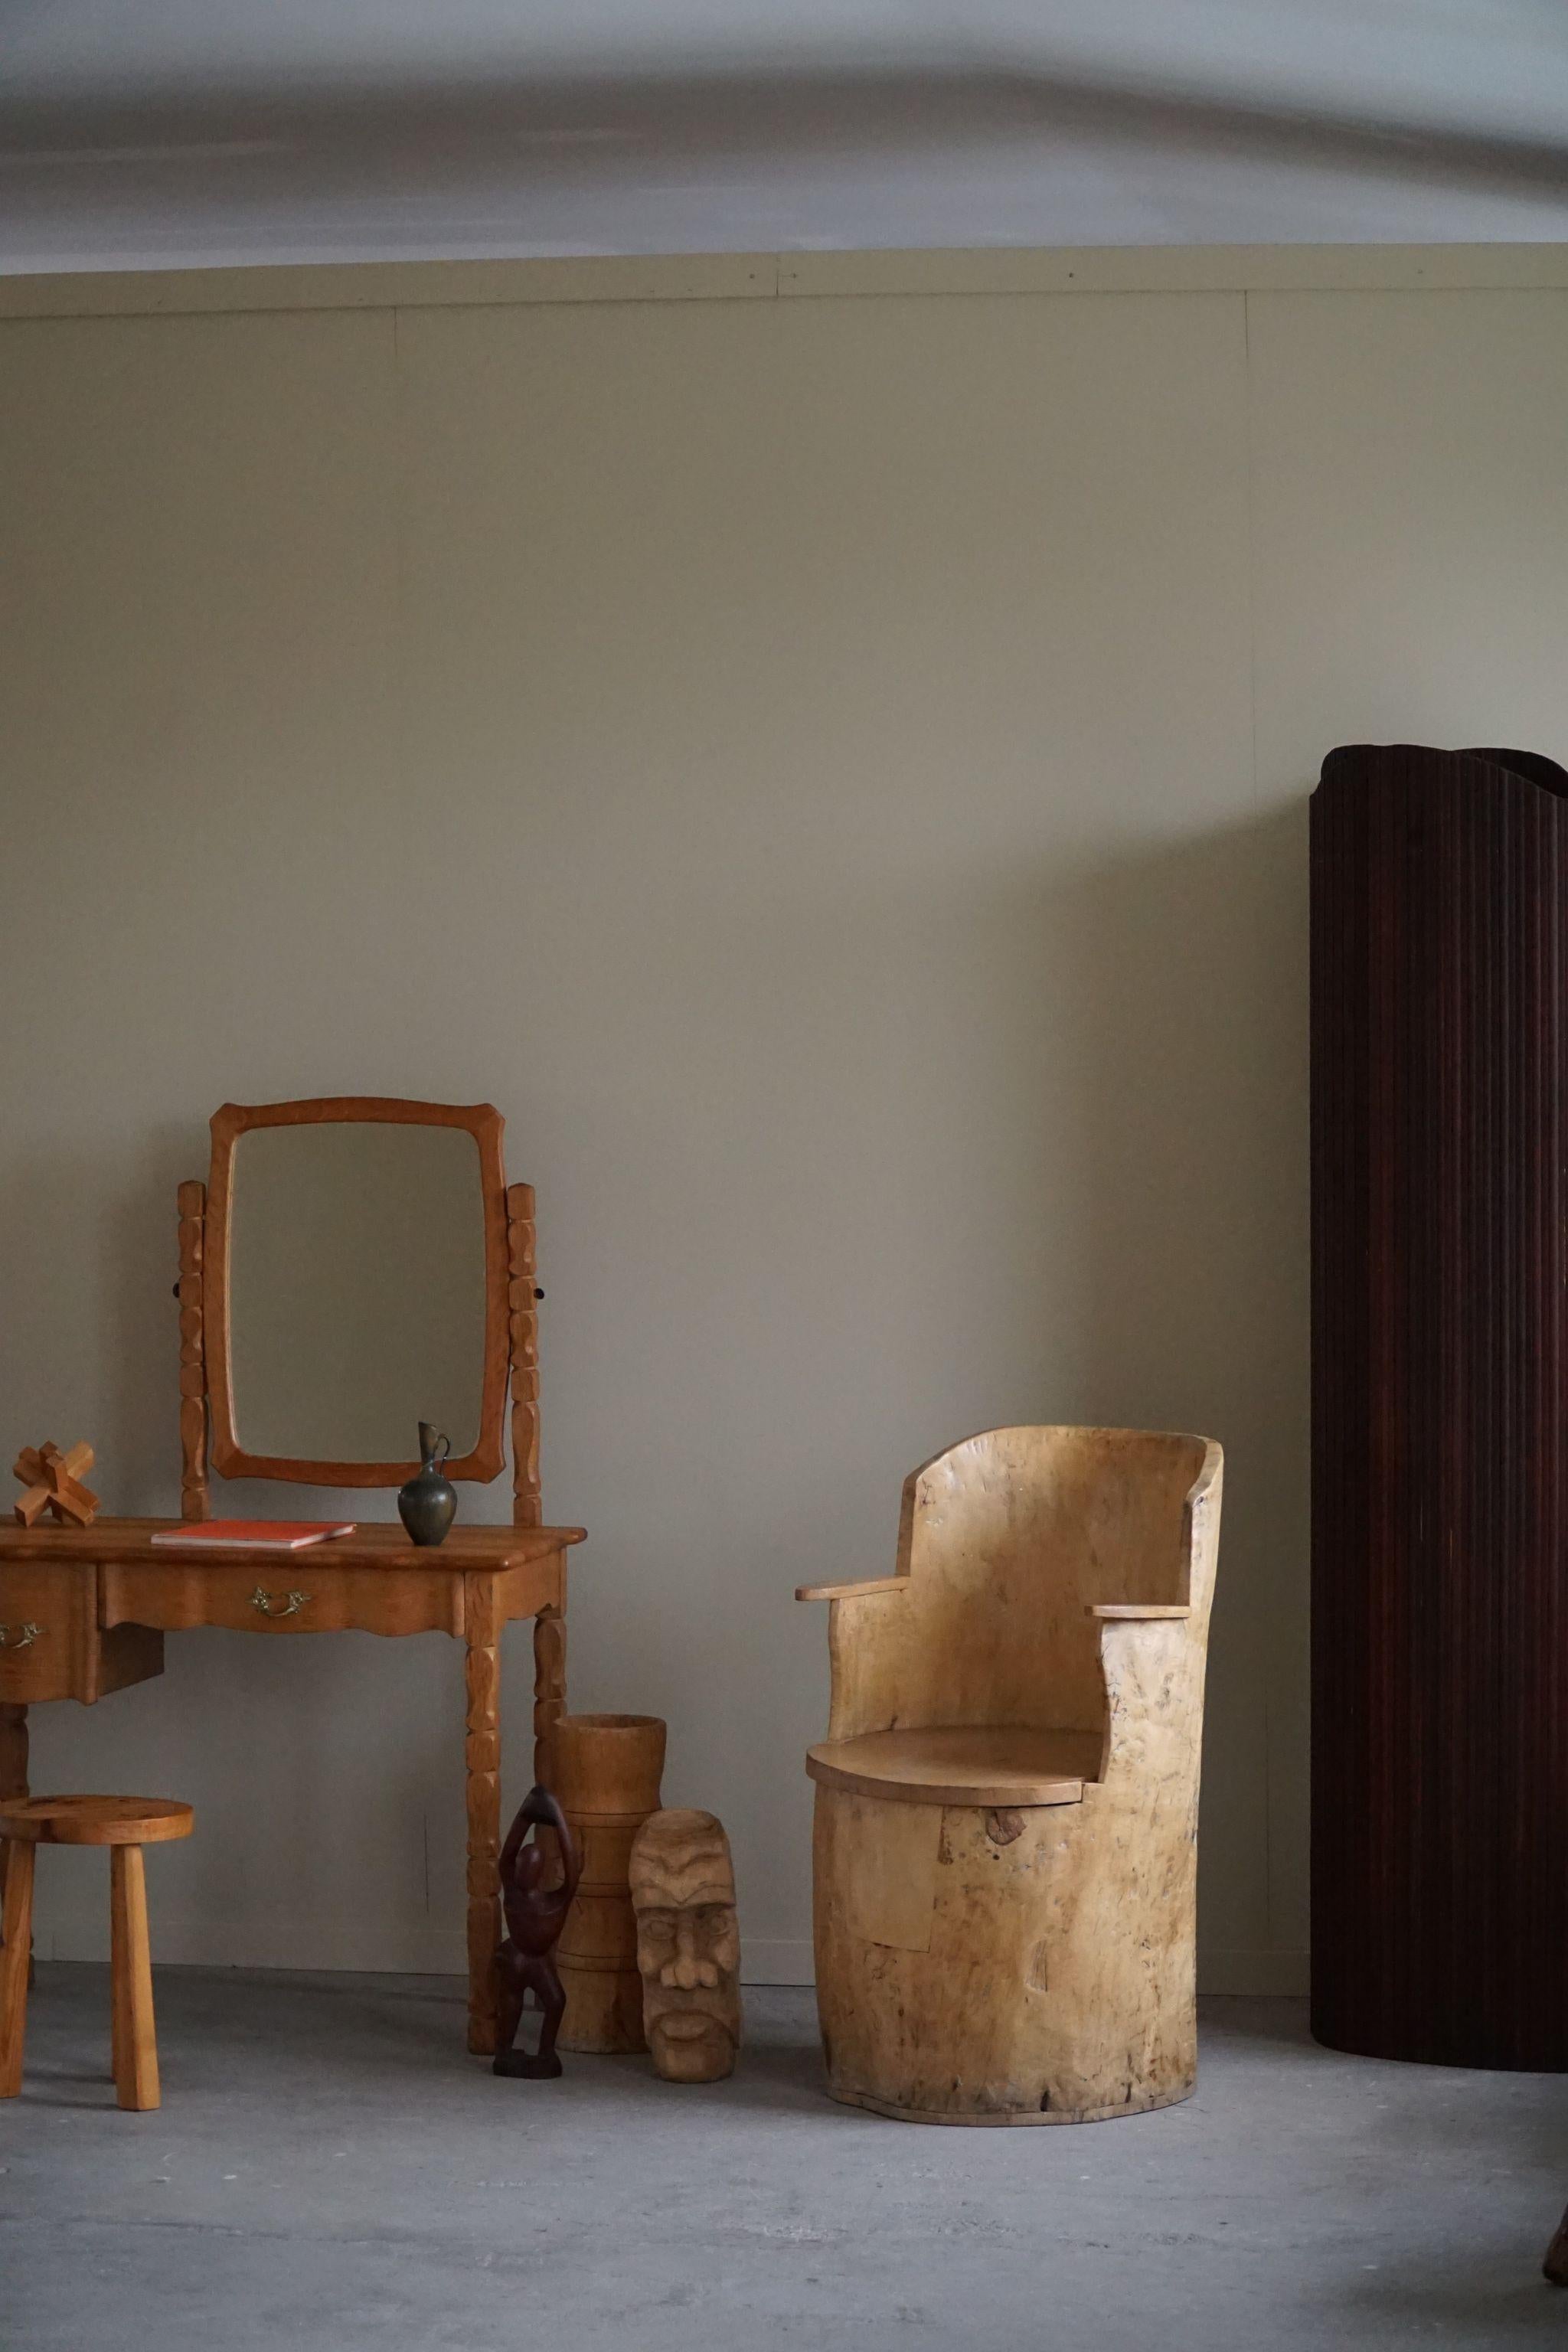 Charmanter primitiver Baumstumpf-Stuhl aus massiver Birke. Handgeschnitzt von einem unbekannten schwedischen Tischler. Ein schönes Wabi-Sabi-Stück, das perfekt in die moderne Einrichtung passt.

Dieser moderne Sessel passt in viele